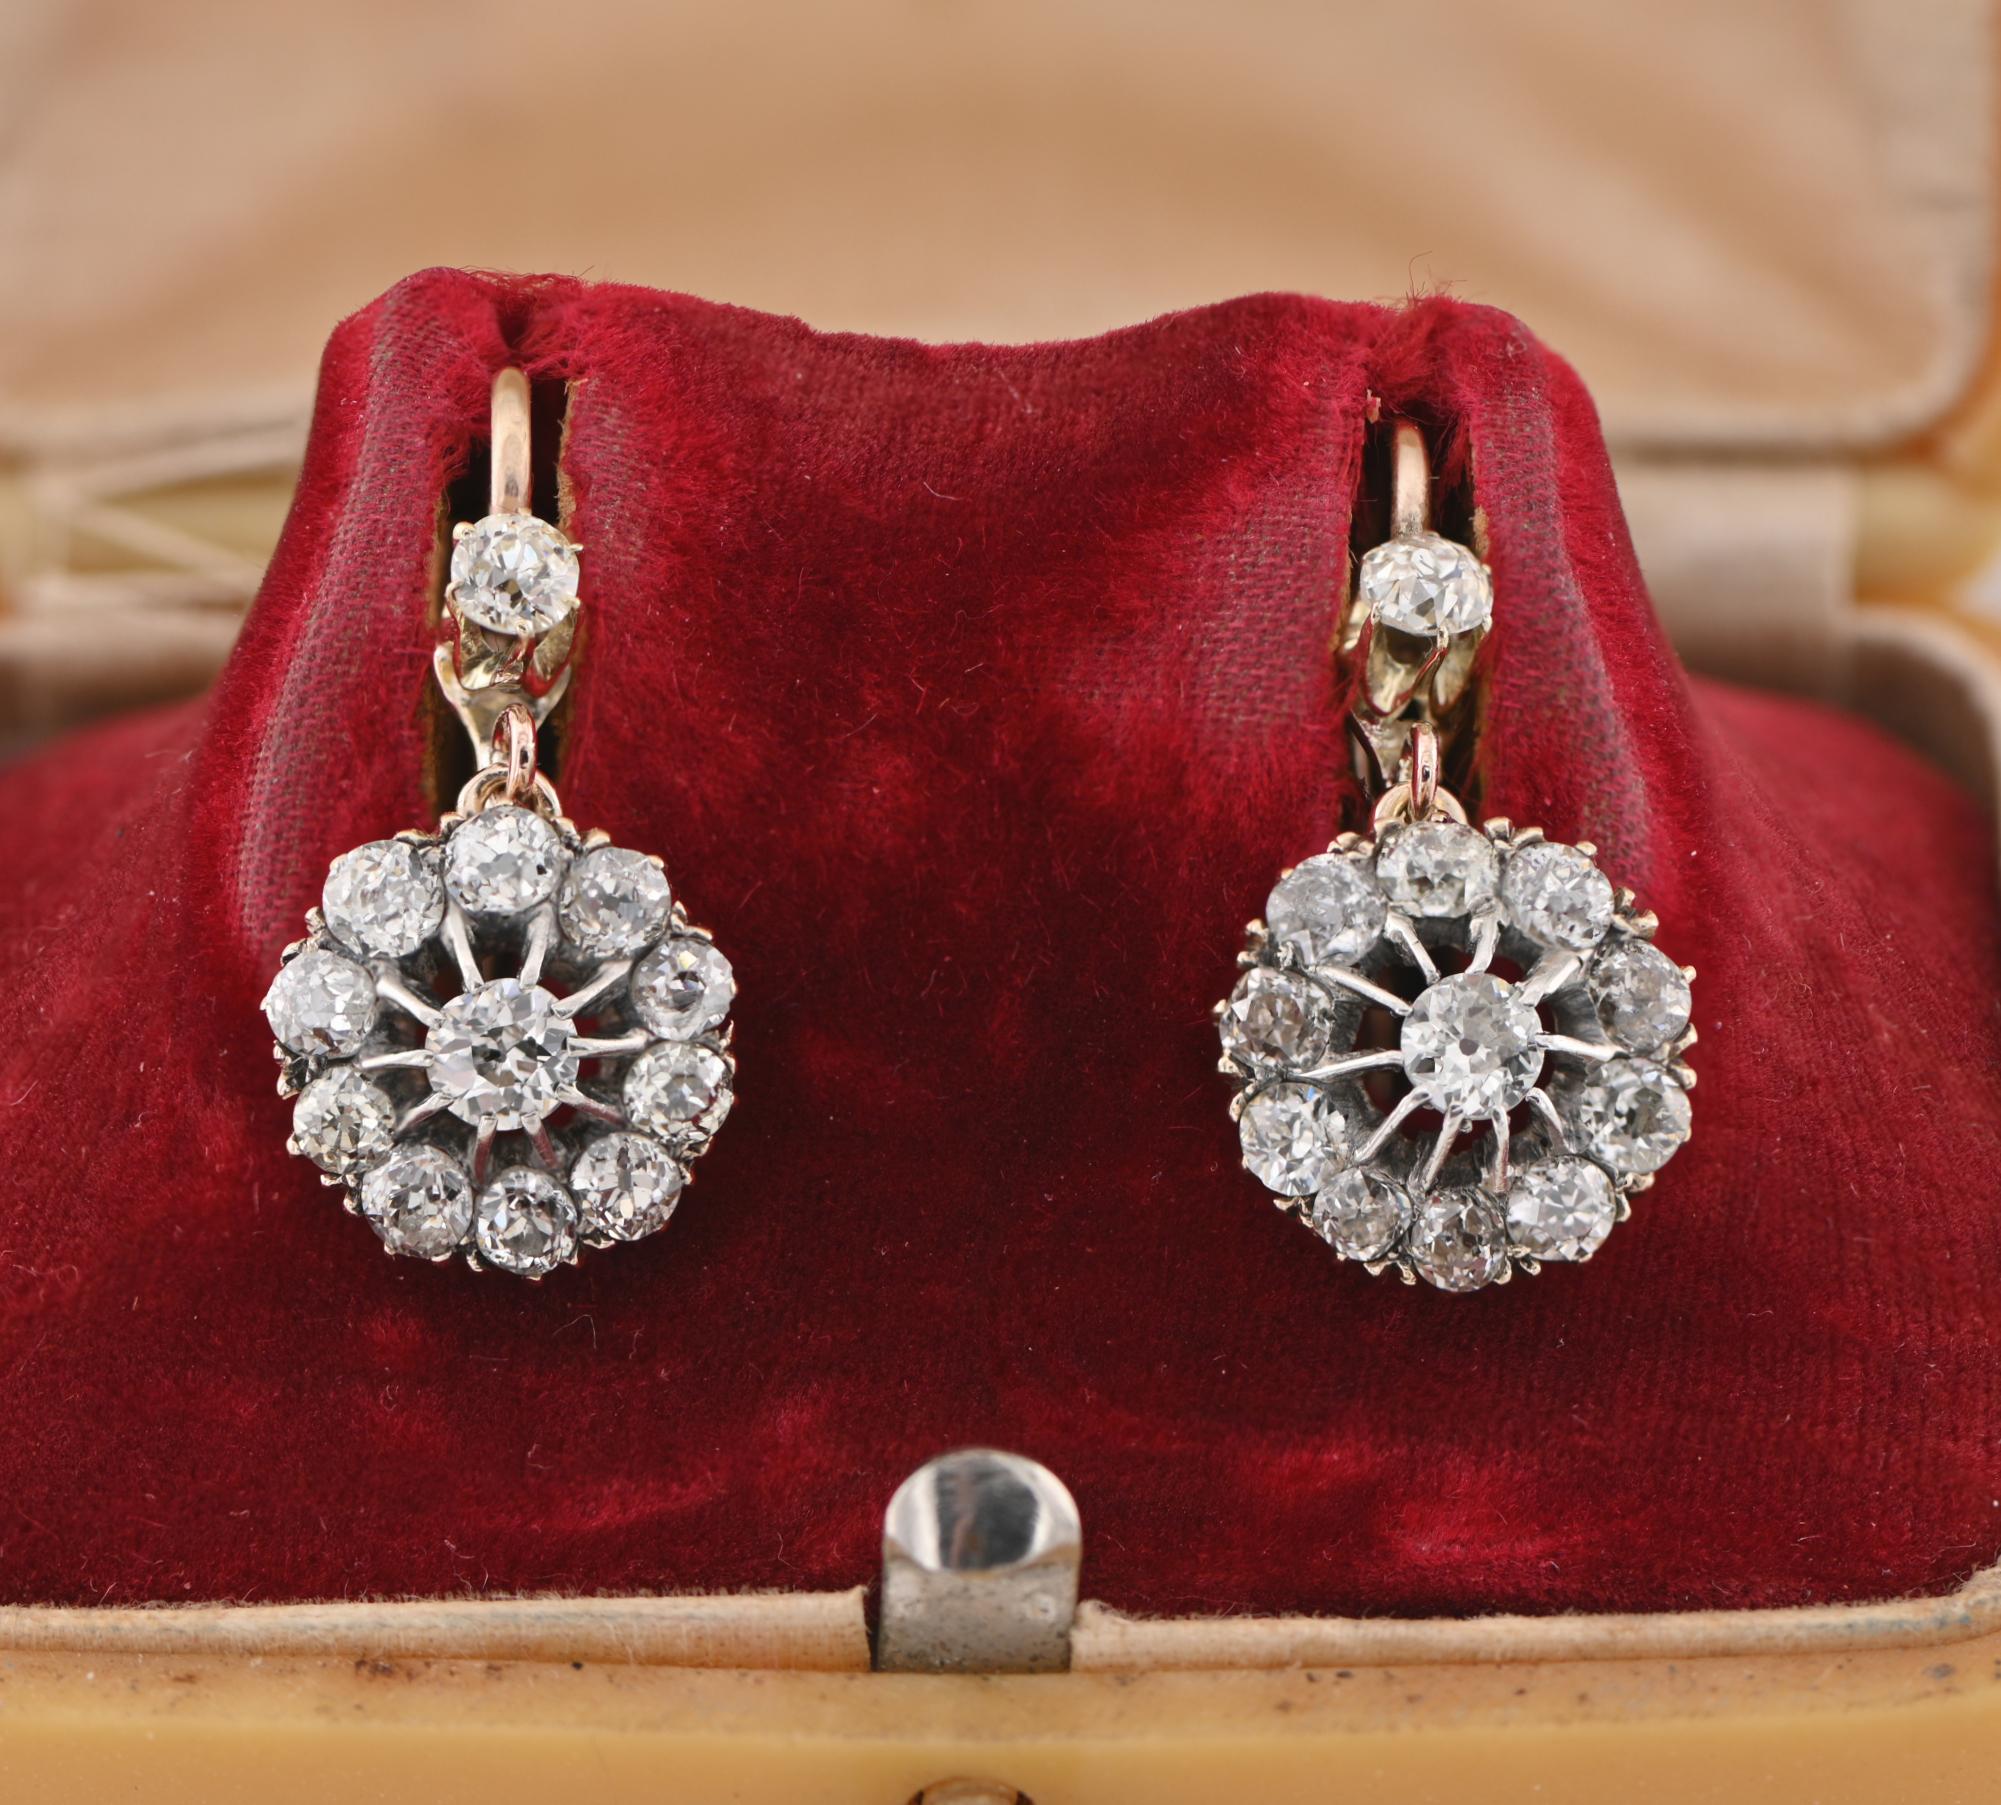 Der süßeste Viktorianer!
Diese spektakulären Diamant-Tropfen-Ohrringe sind authentisch viktorianischen Zeit, 1890 ca
Mit der prächtigen viktorianischen Handwerkskunst, massivem 18 KT Gold
Edle Diamant-Gänseblümchen-Tropfen, gekrönt von einem